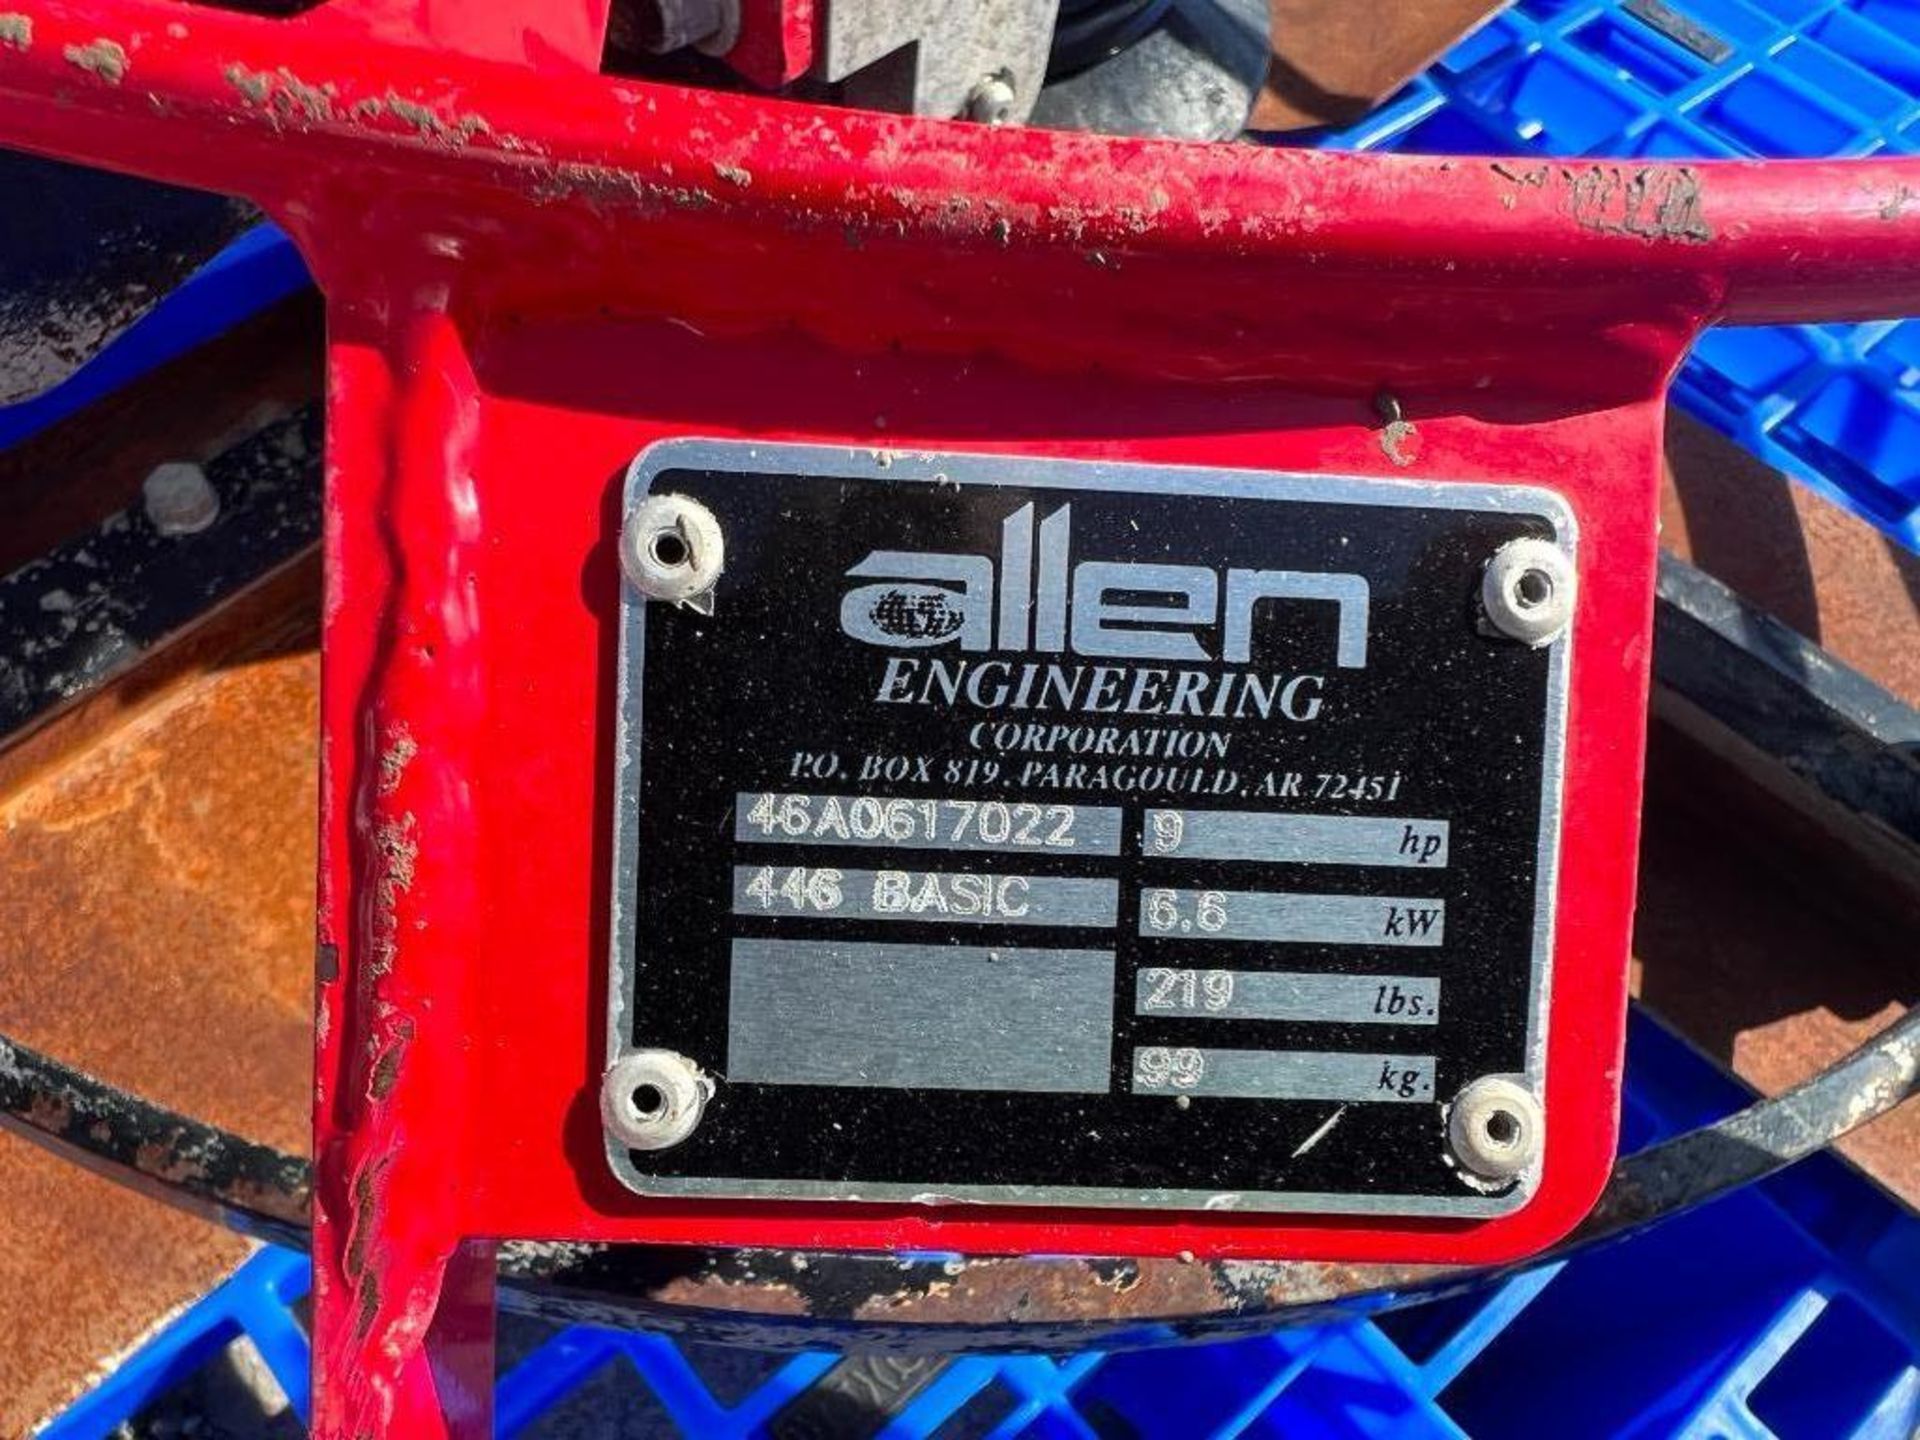 46" Allen Pro 446 Basic Walk Behind Power Trowel, Serial #46A0617022, 9 HP, 219 Lbs. Honda GX 270 En - Image 2 of 6